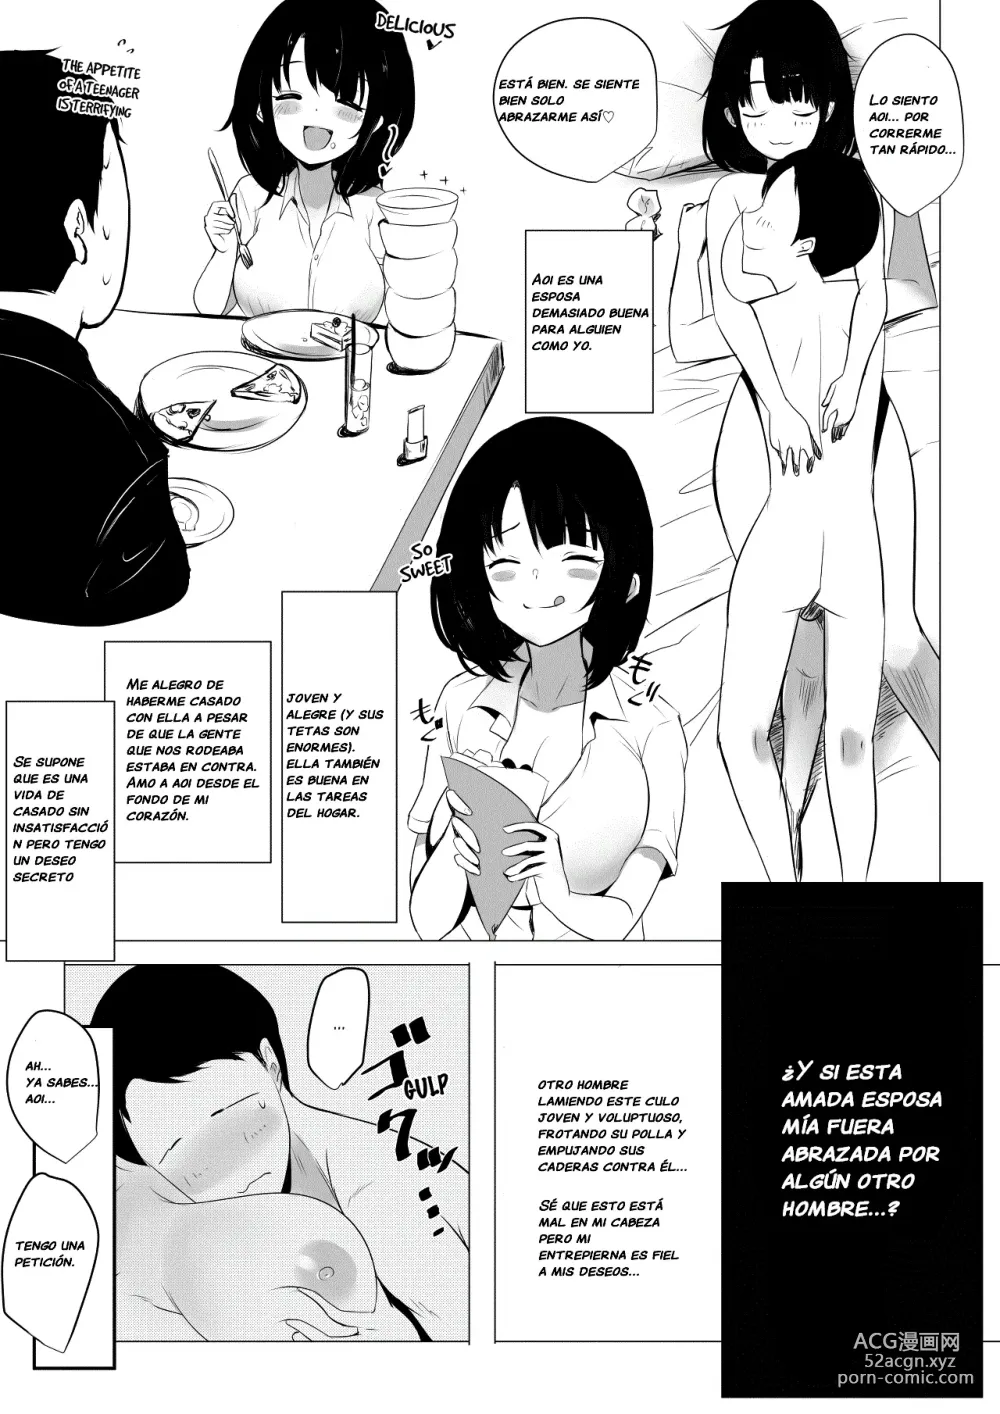 Page 10 of doujinshi Vi a una esposa de preparatoria de grandes pechos que solo deja que otro hombre la mime y abrace.